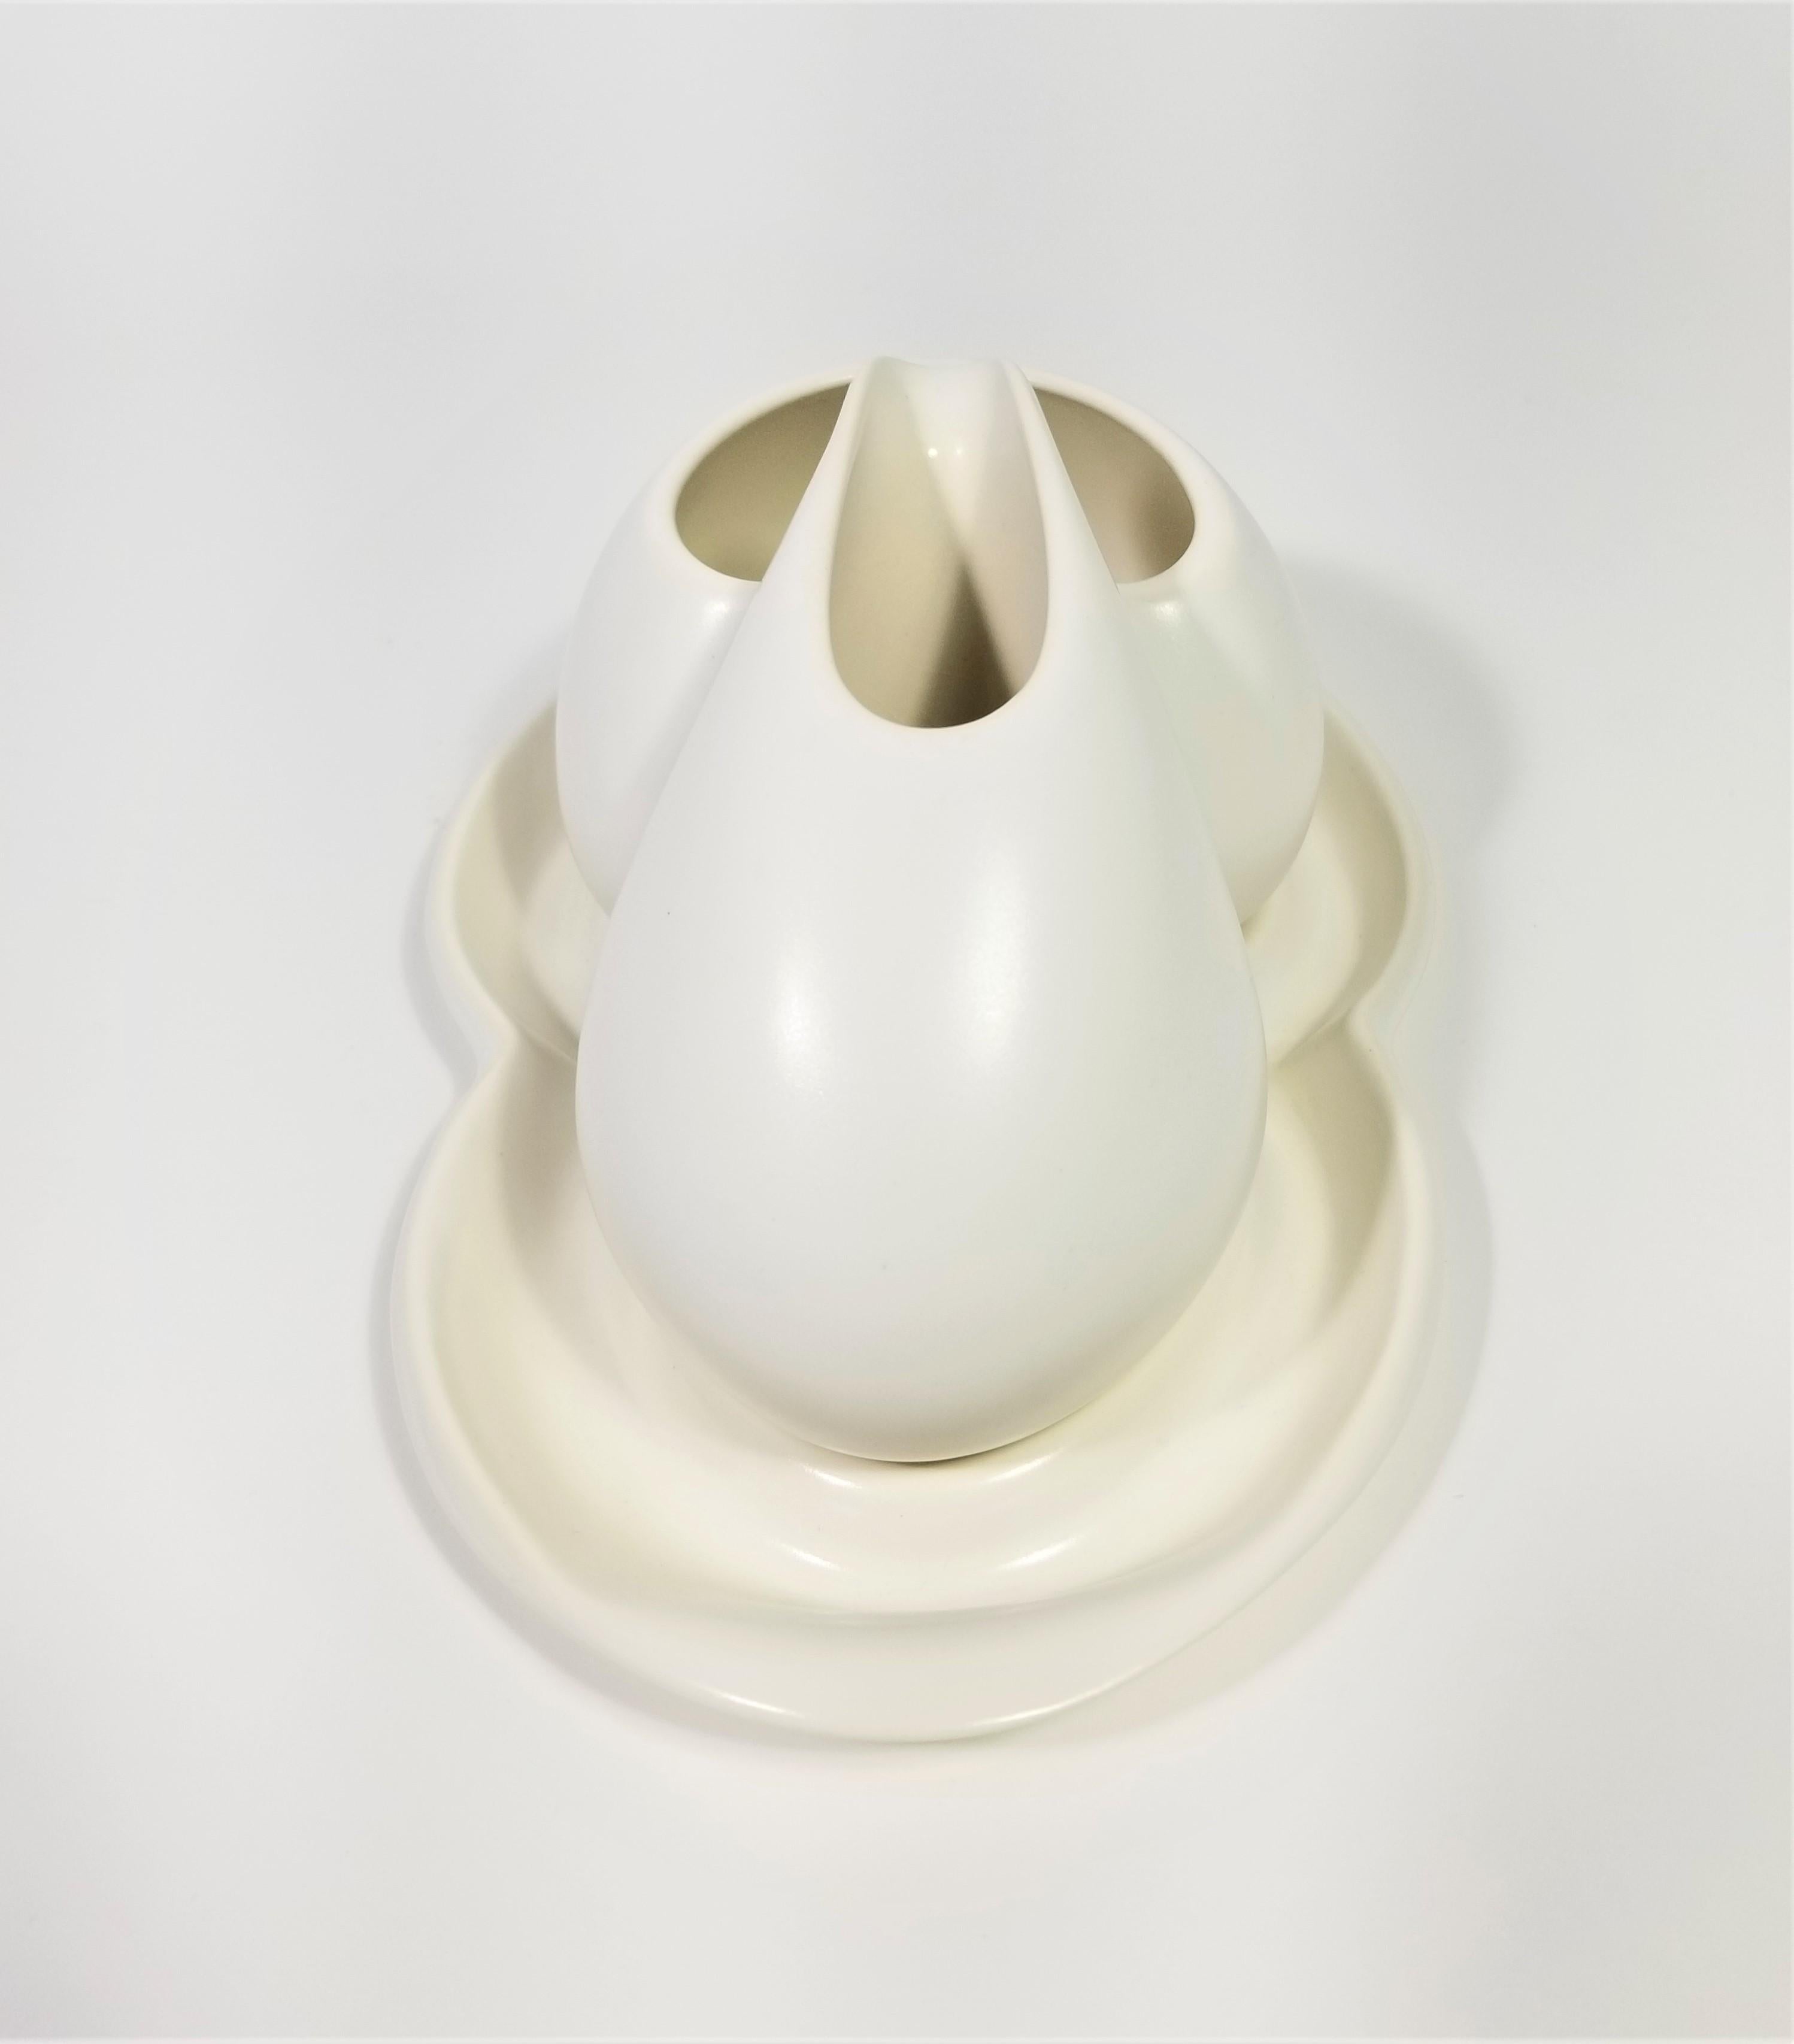 Porcelain Artist Signed Sculptural Modernist Cream and Sugar Set For Sale 6